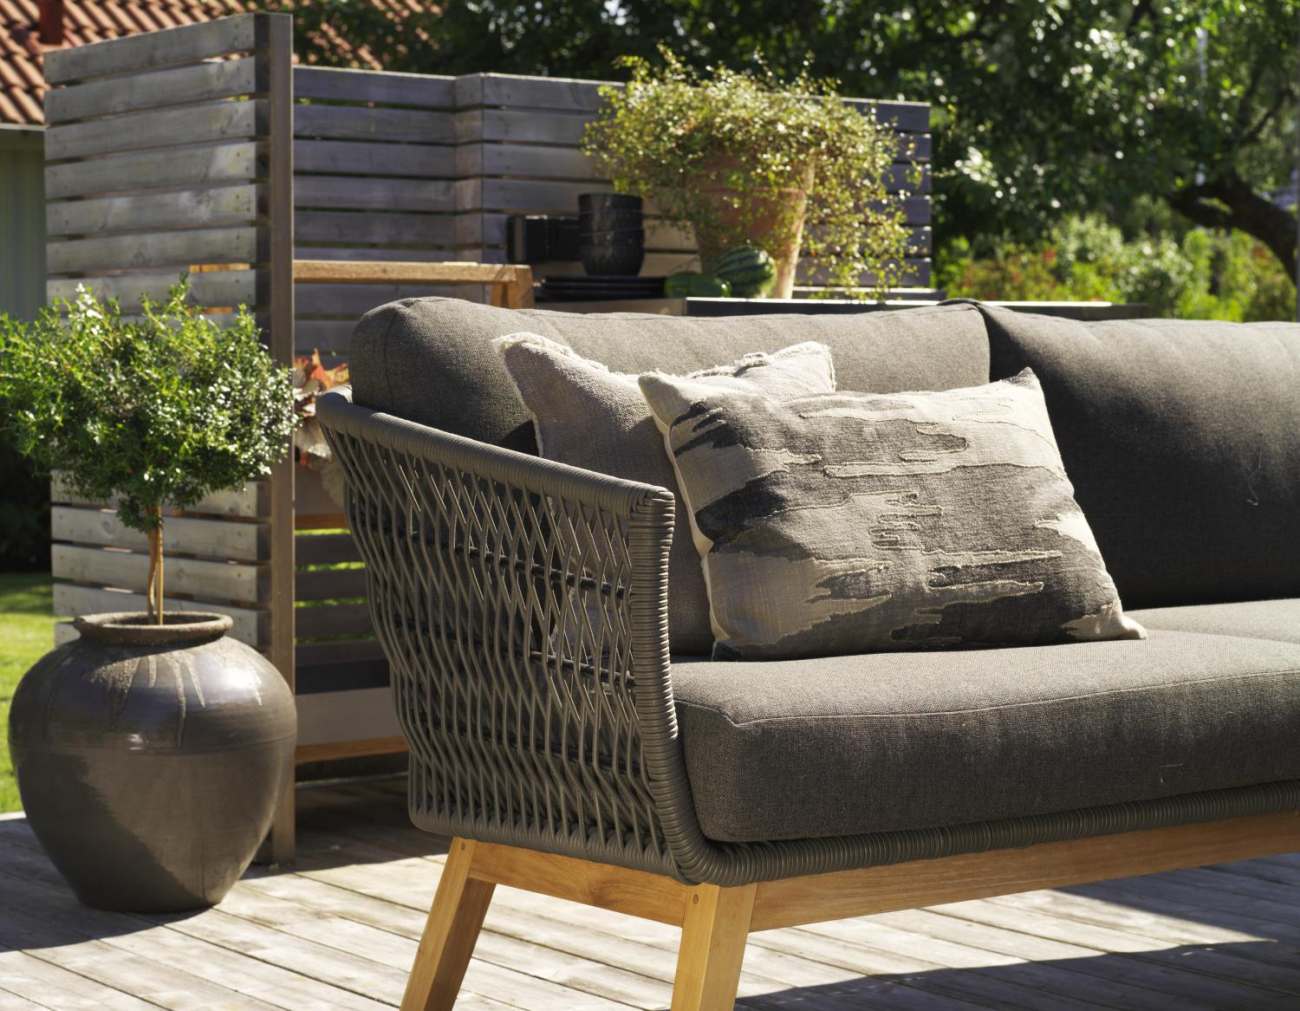 Das Gartensofa Kenton überzeugt mit seinem modernen Design. Gefertigt wurde er aus Rattan, welcher einen grauen Farbton besitzt. Das Gestell ist aus Teakholz und hat eine natürliche Farbe. Die Sitzhöhe des Sofas beträgt 50 cm.